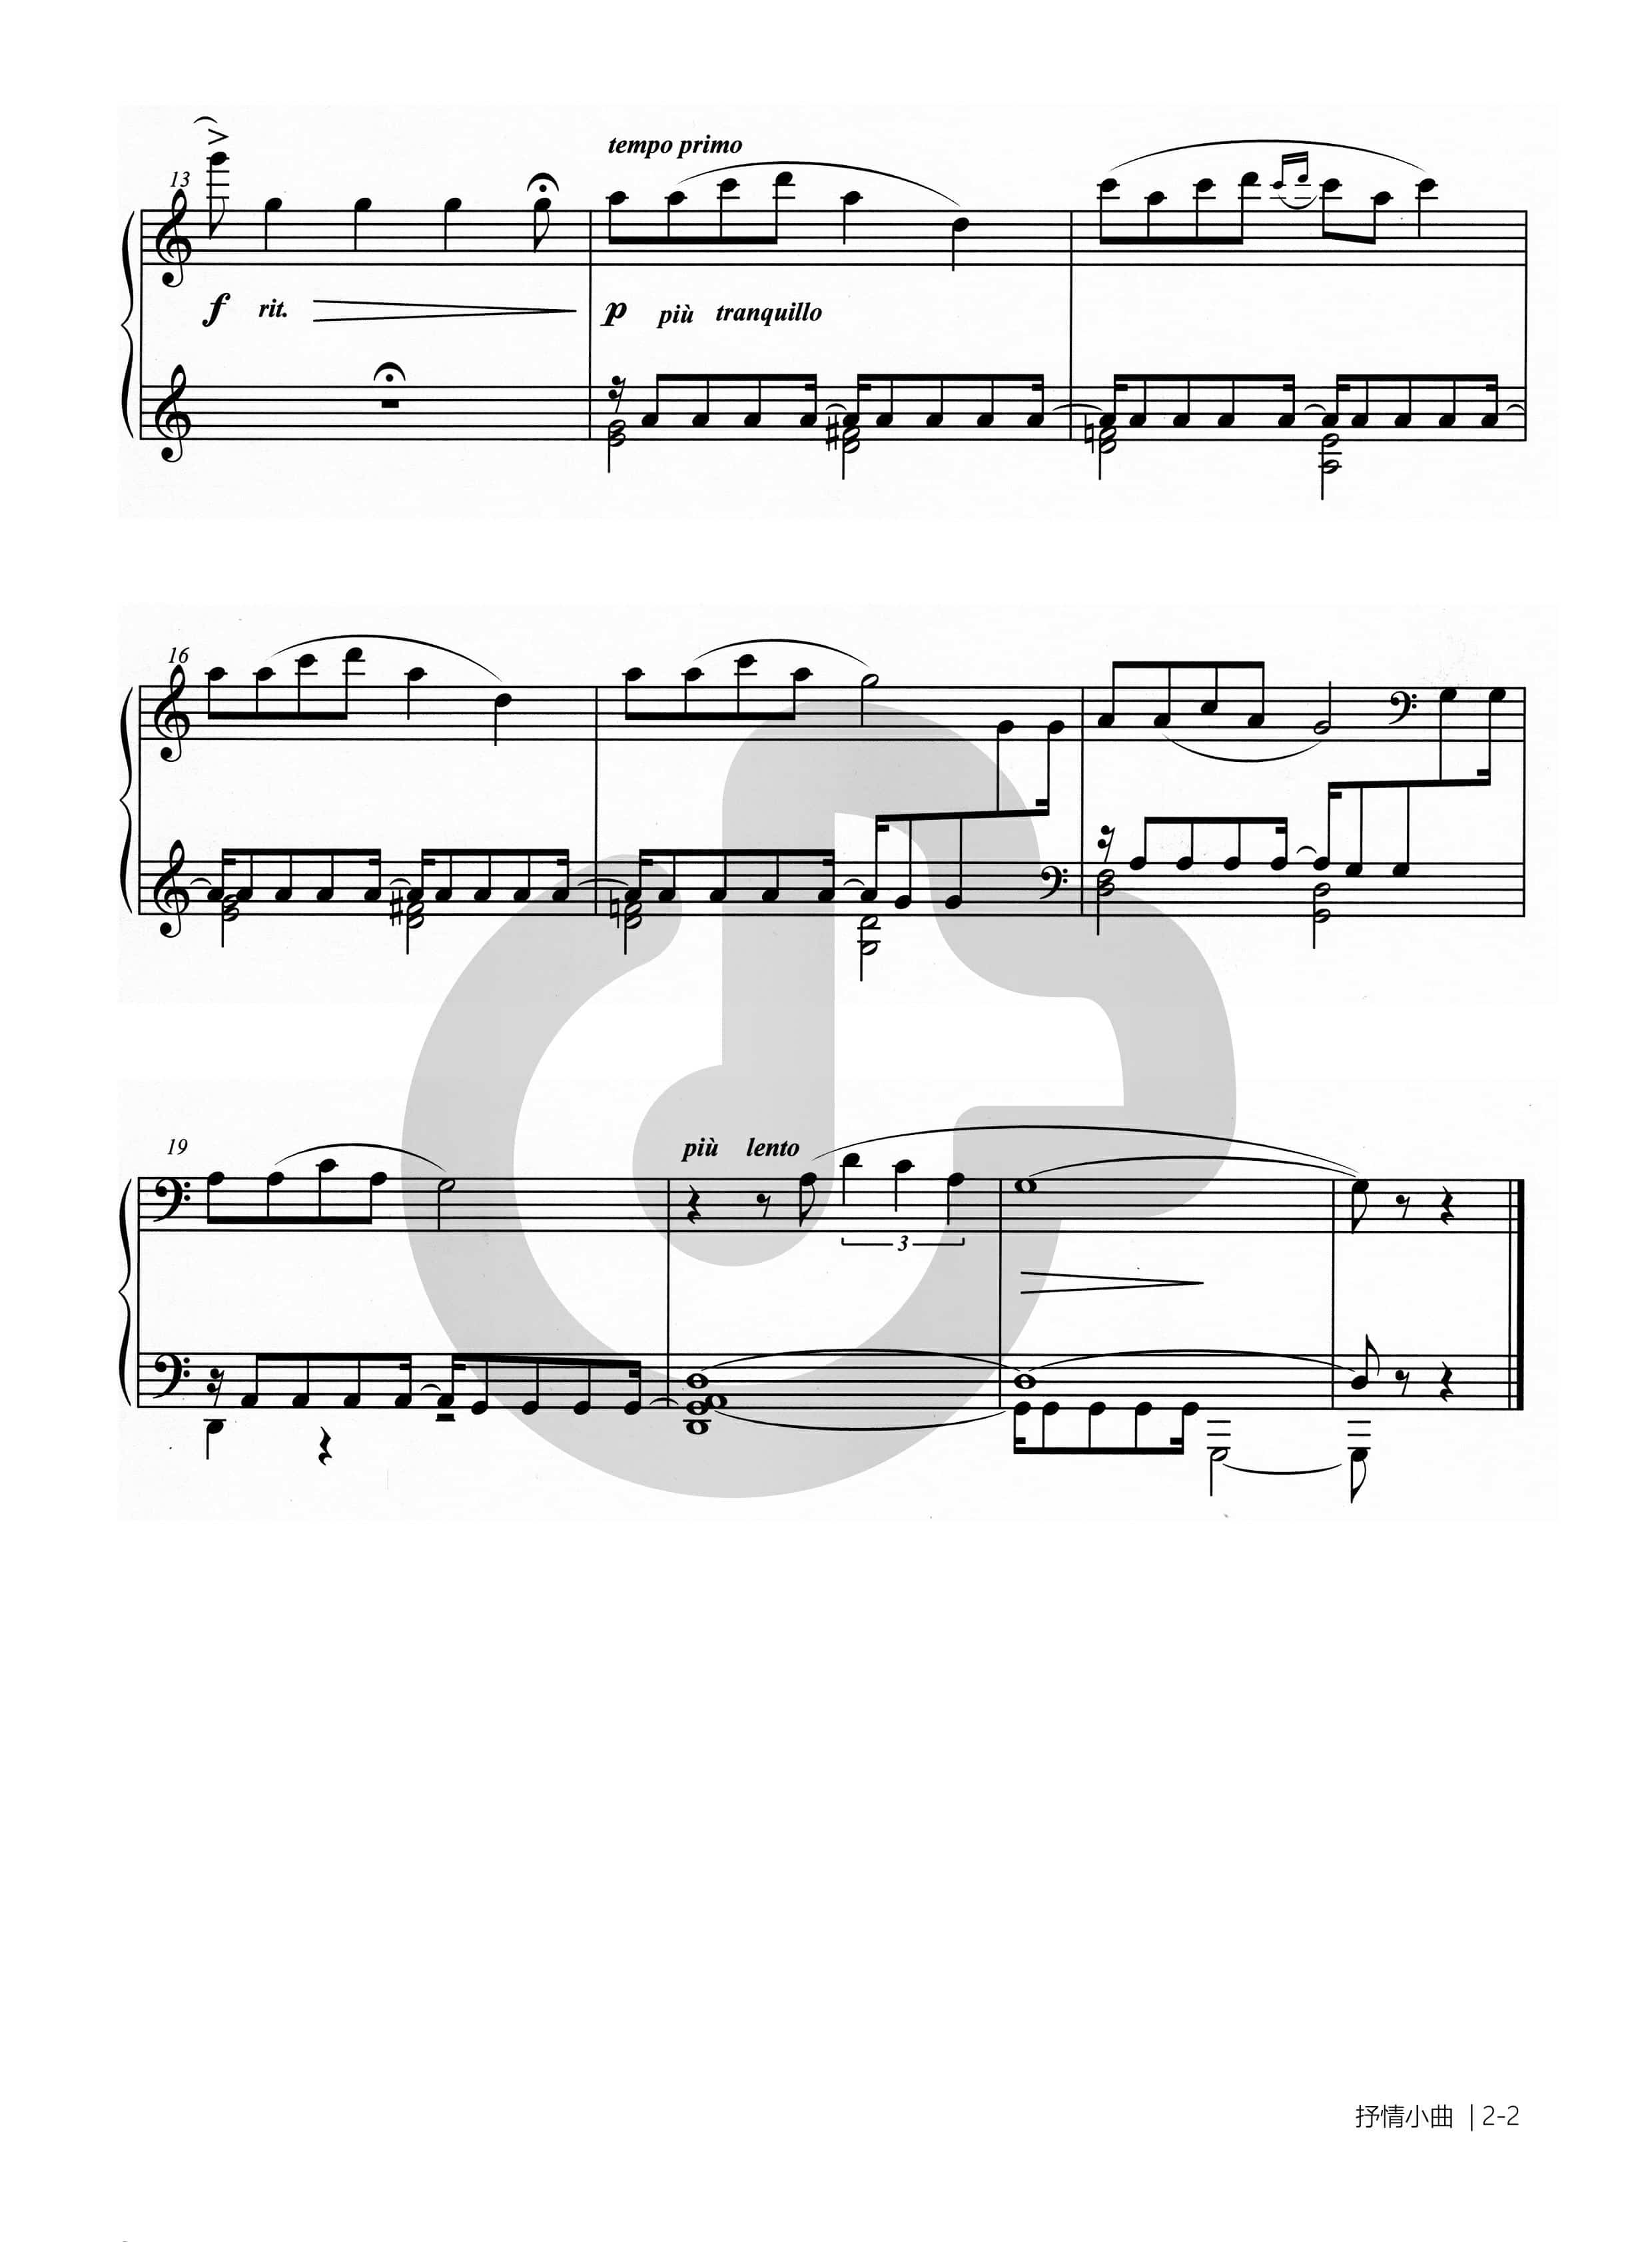 钢琴谱抒情小曲-2